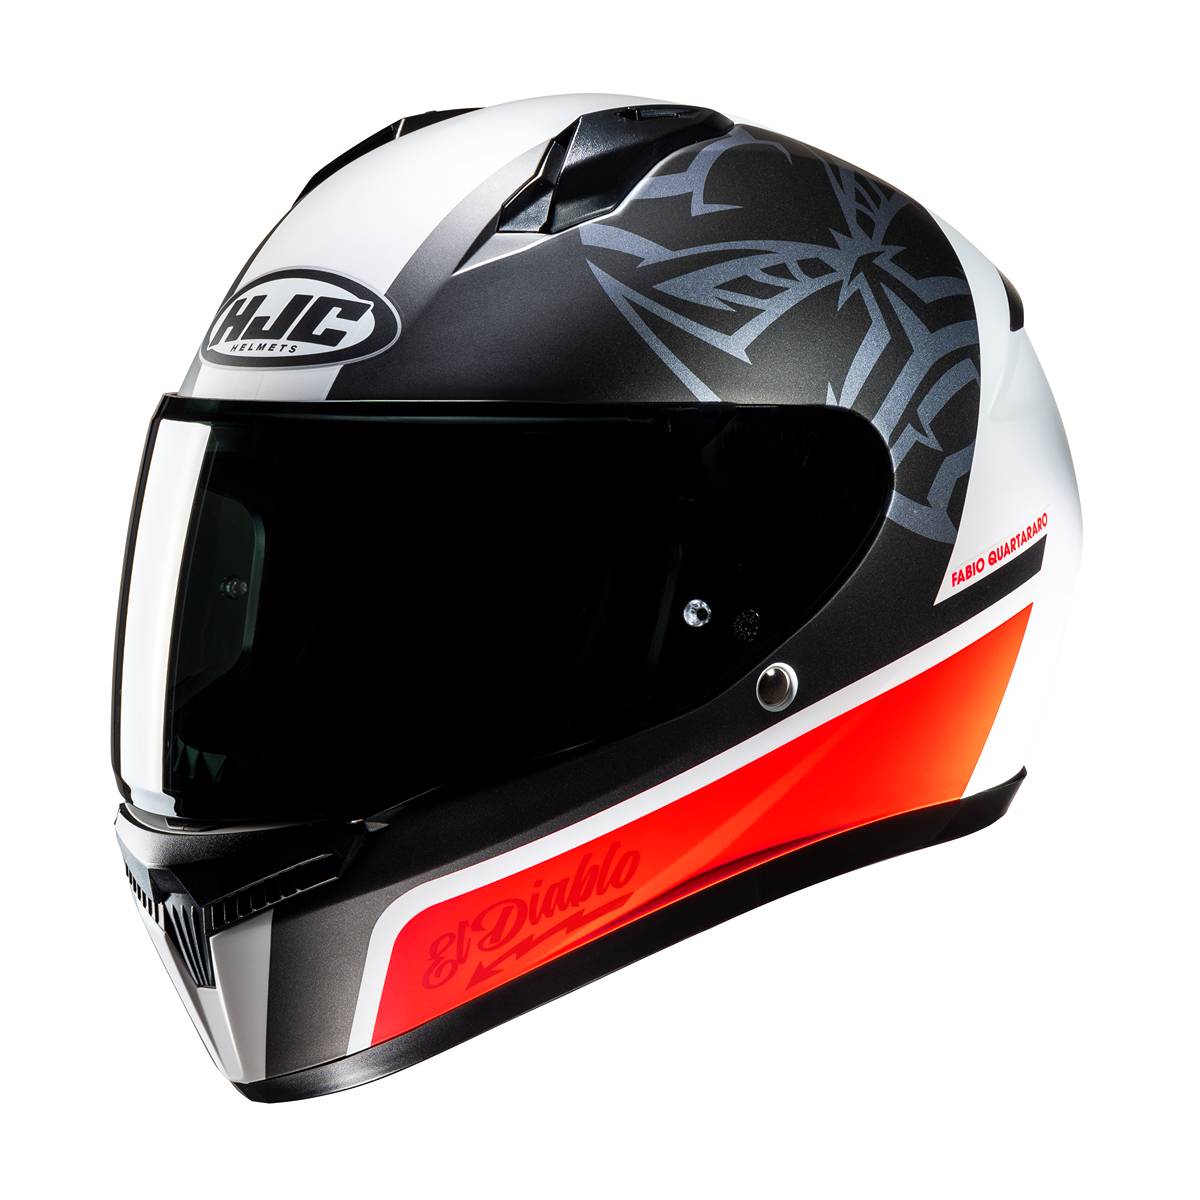 Image of EU HJC C10 Fabio Quartararo 20 Full Face Helmet White Red Taille M